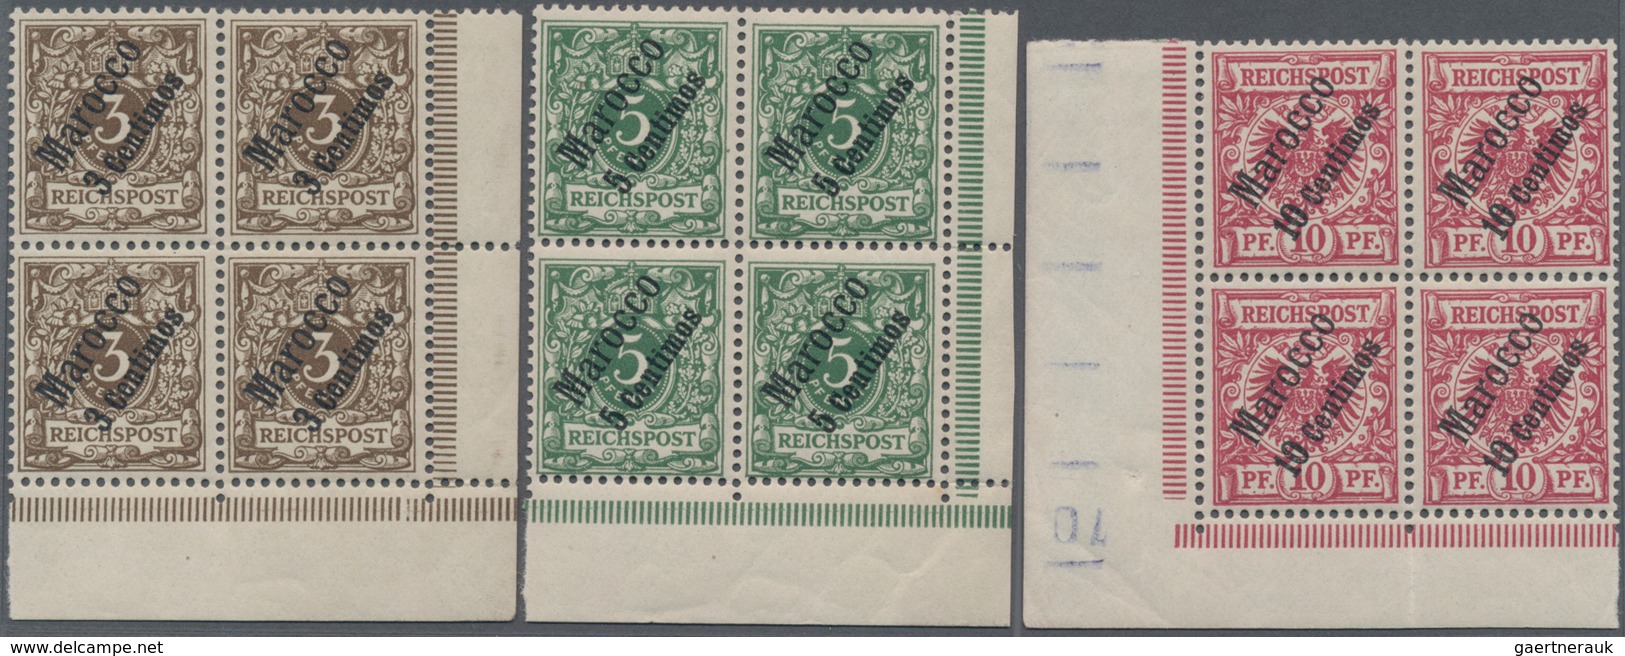 Deutsche Post In Marokko: 1899, Freimarken Krone Adler Mit Diagonalem Aufdruck "Marocco" Und Neuem W - Deutsche Post In Marokko